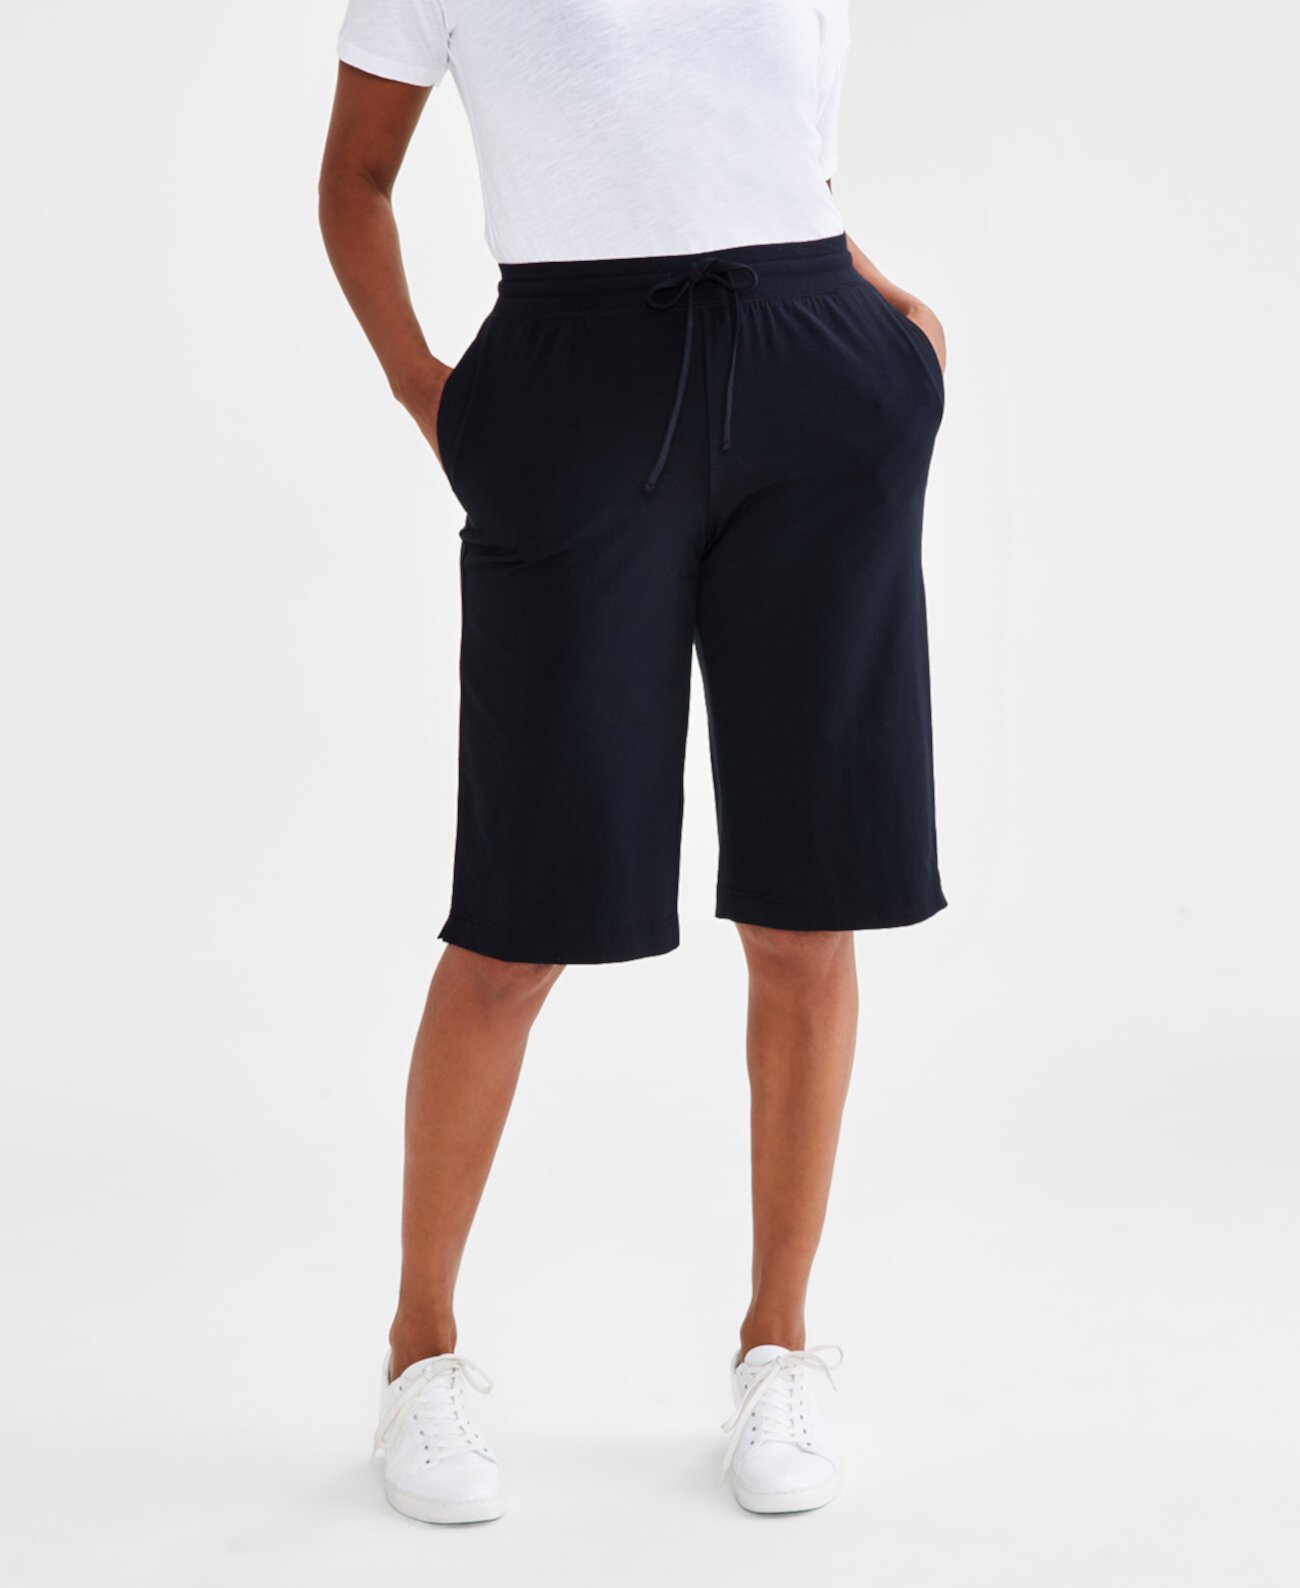 Женские спортивные штаны со средней посадкой, шорты-бермуды, созданные для Macy's Style & Co